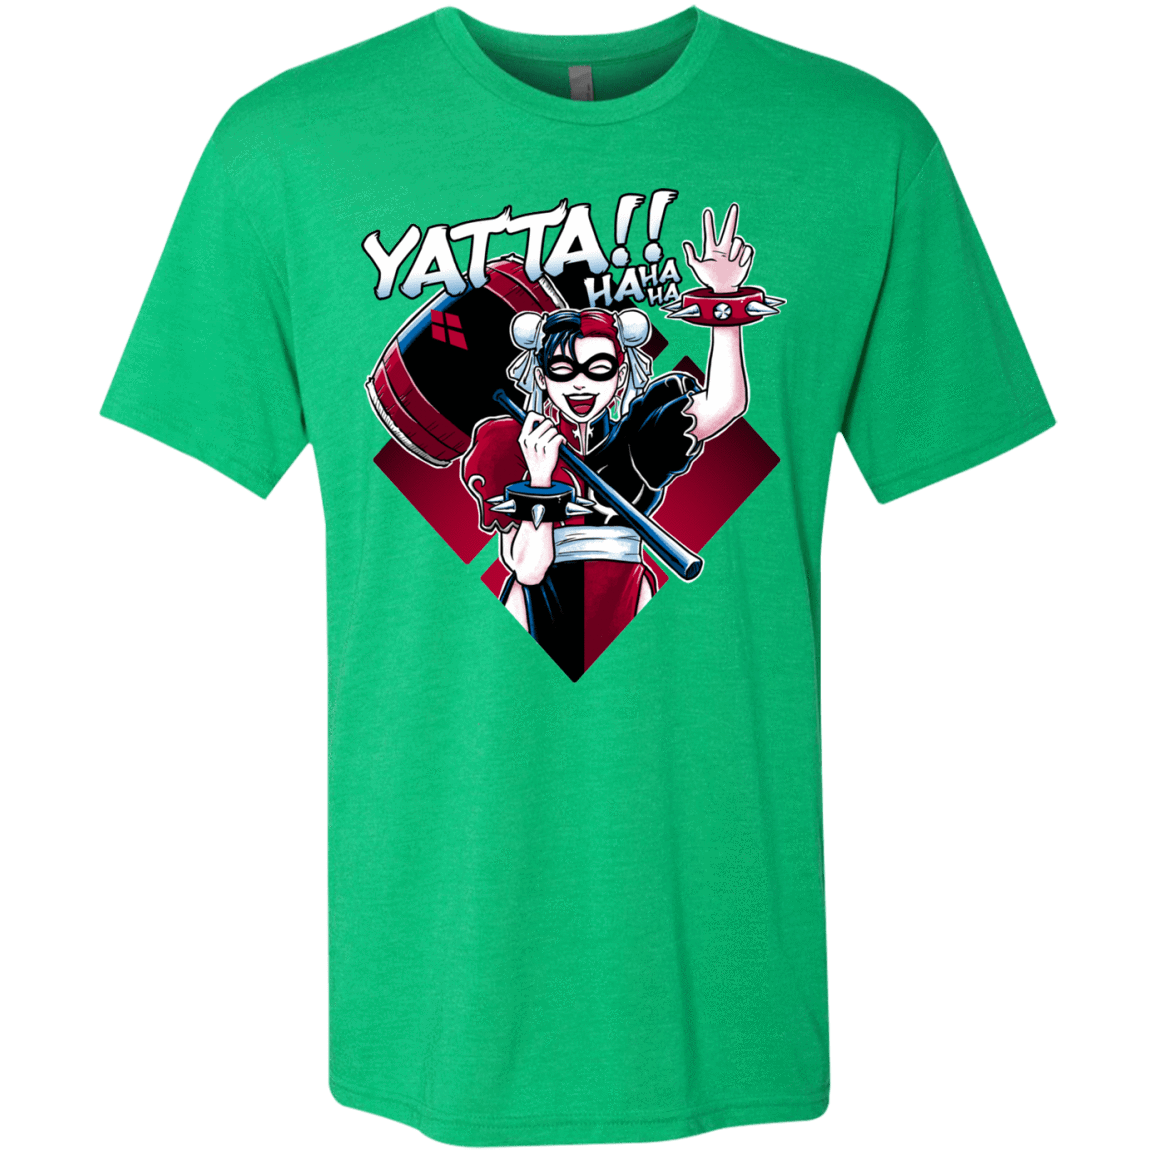 T-Shirts Envy / Small Harley Yatta Men's Triblend T-Shirt